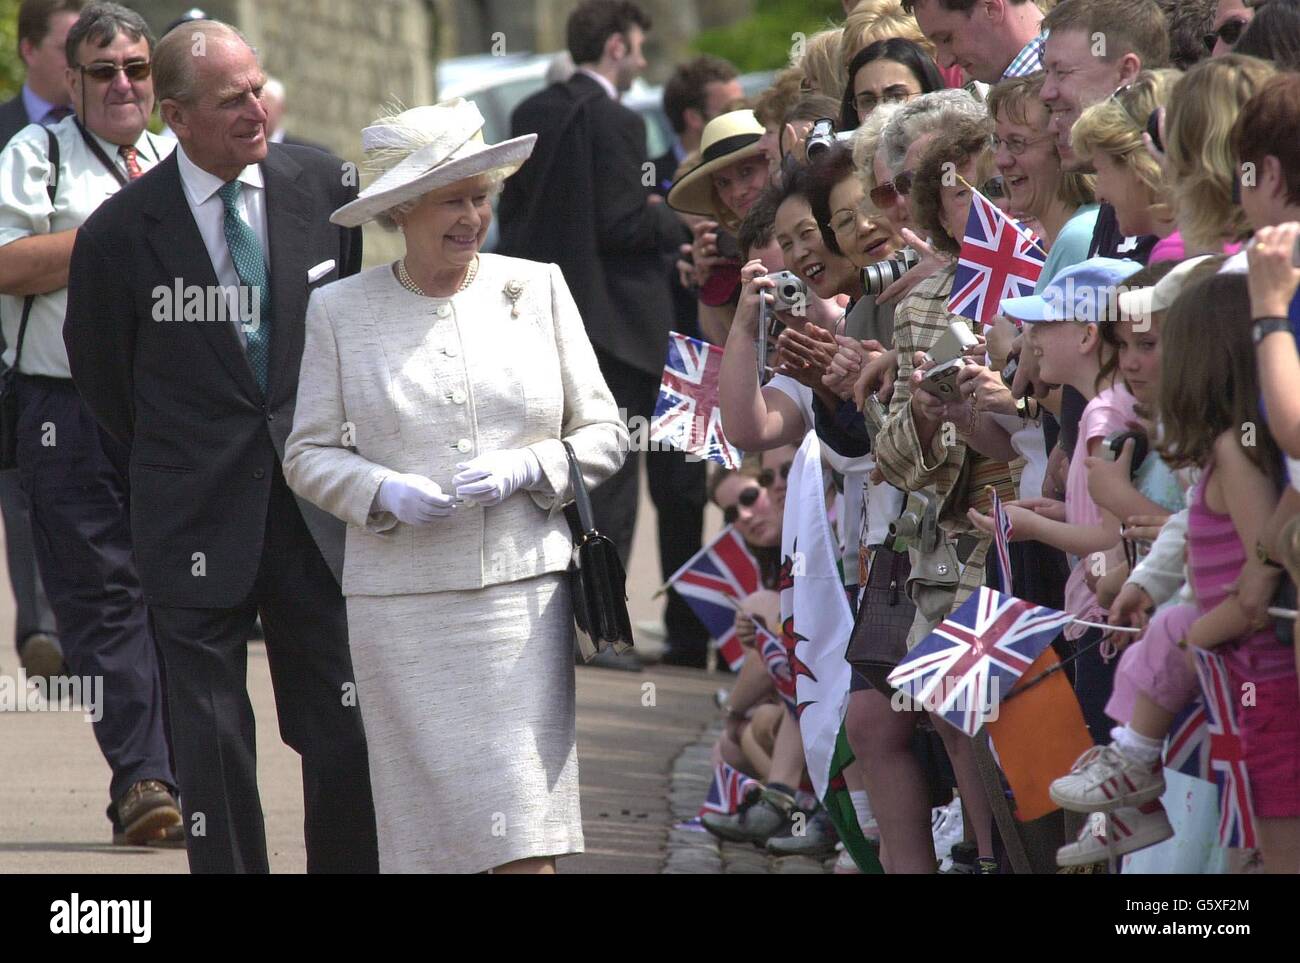 La reine Elizabeth II et le duc d'Édimbourg accueillent les foules dans le parc du château de Windsor, Berkshire, après avoir assisté à un service du dimanche jubilé d'or à la chapelle Saint-Georges. Banque D'Images